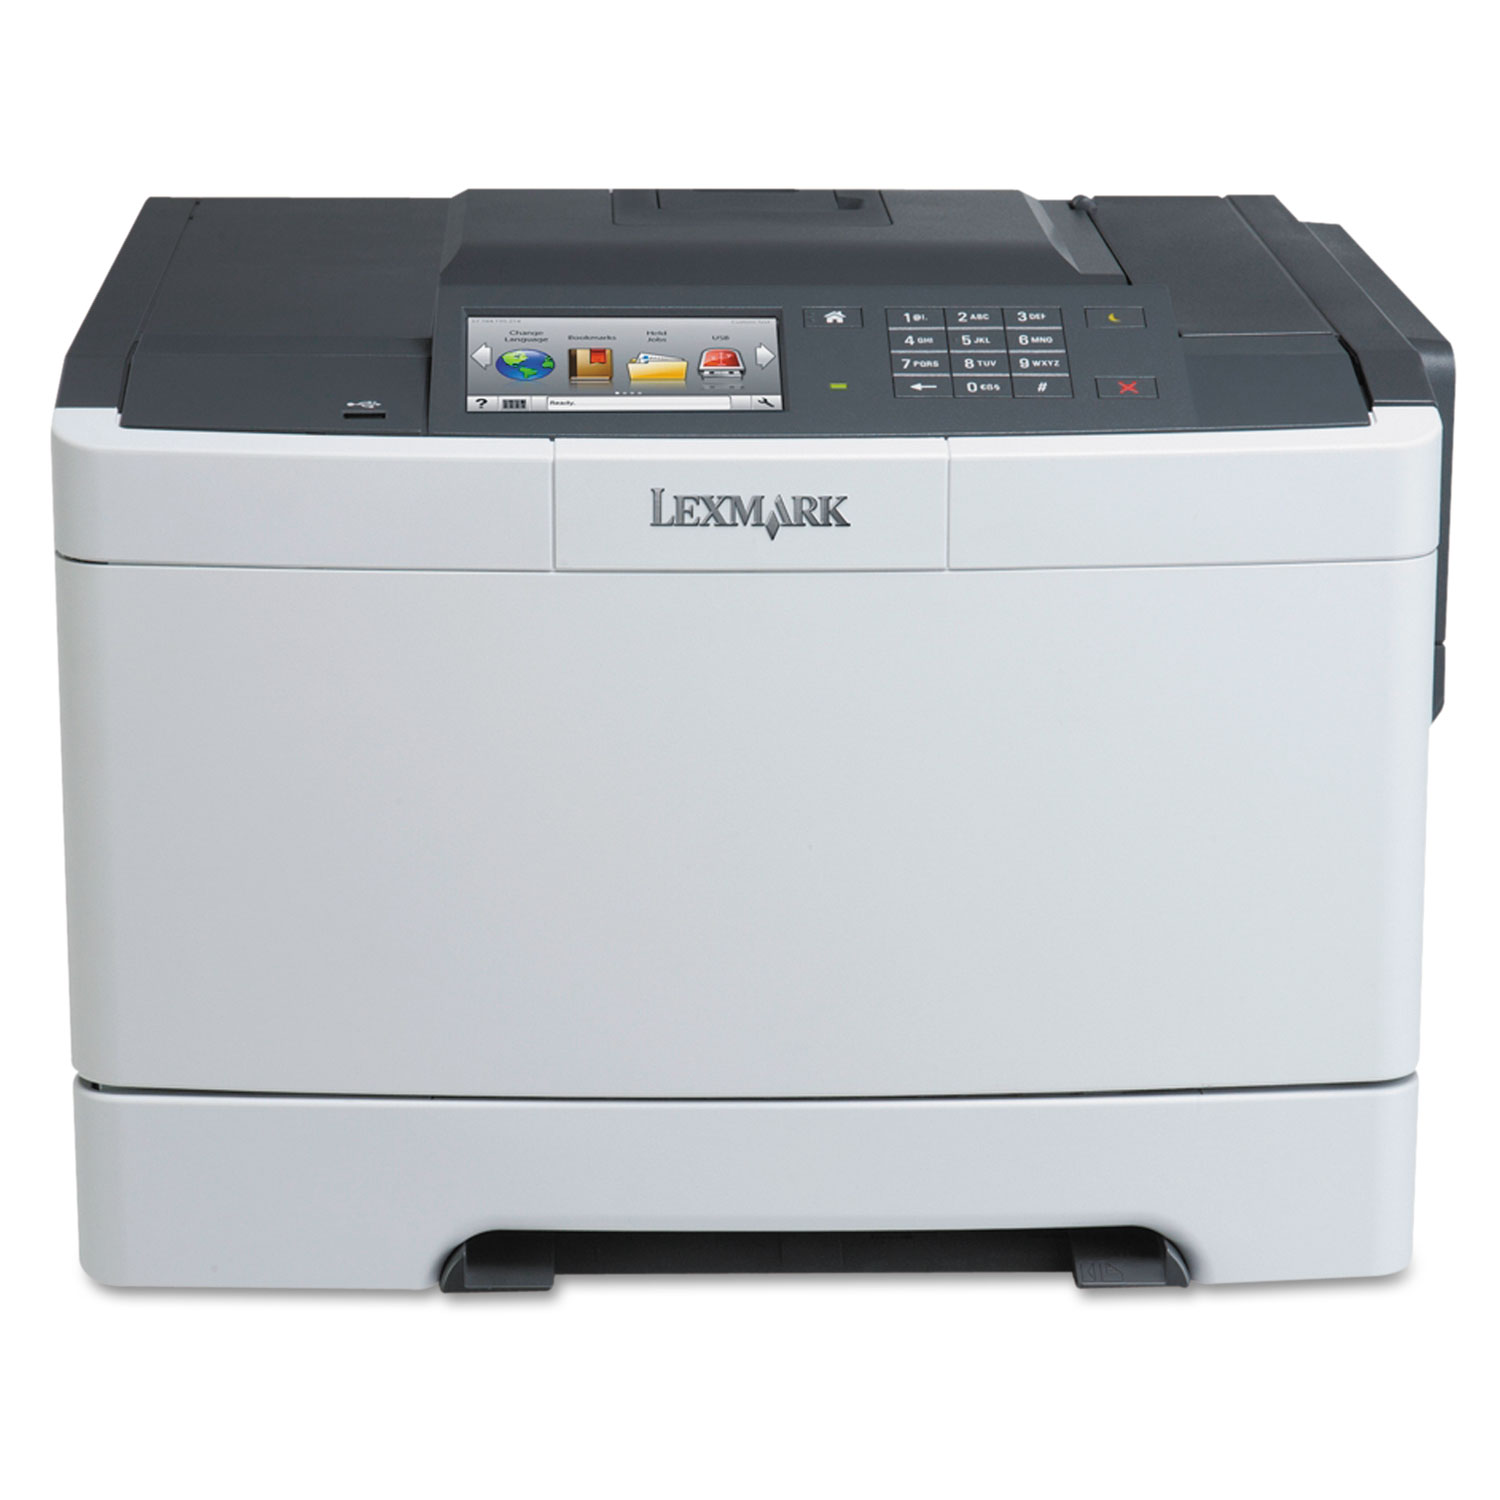 CS510de Color Laser Printer